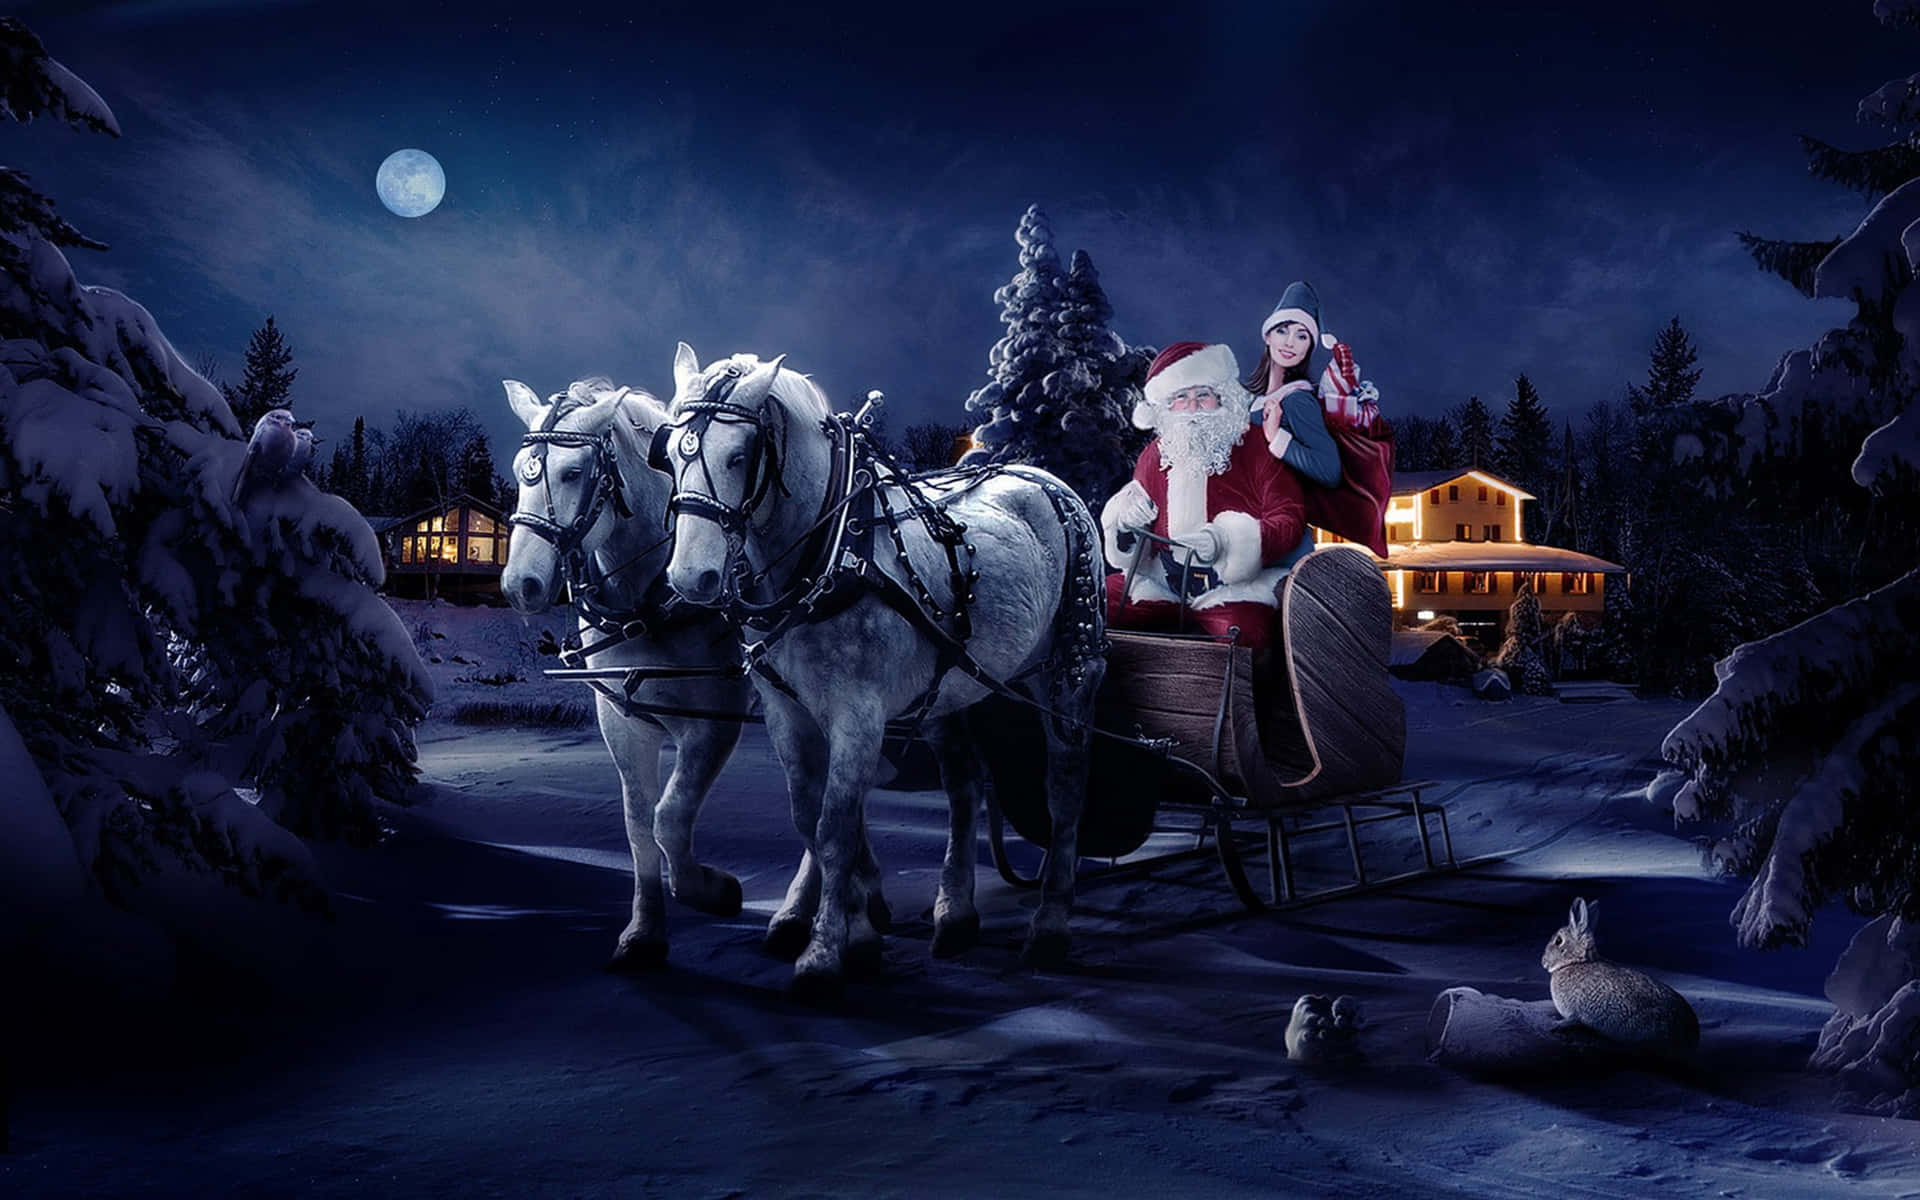 Kostenlosesweihnachtsbild Von Santa Claus Auf Dem Schlitten